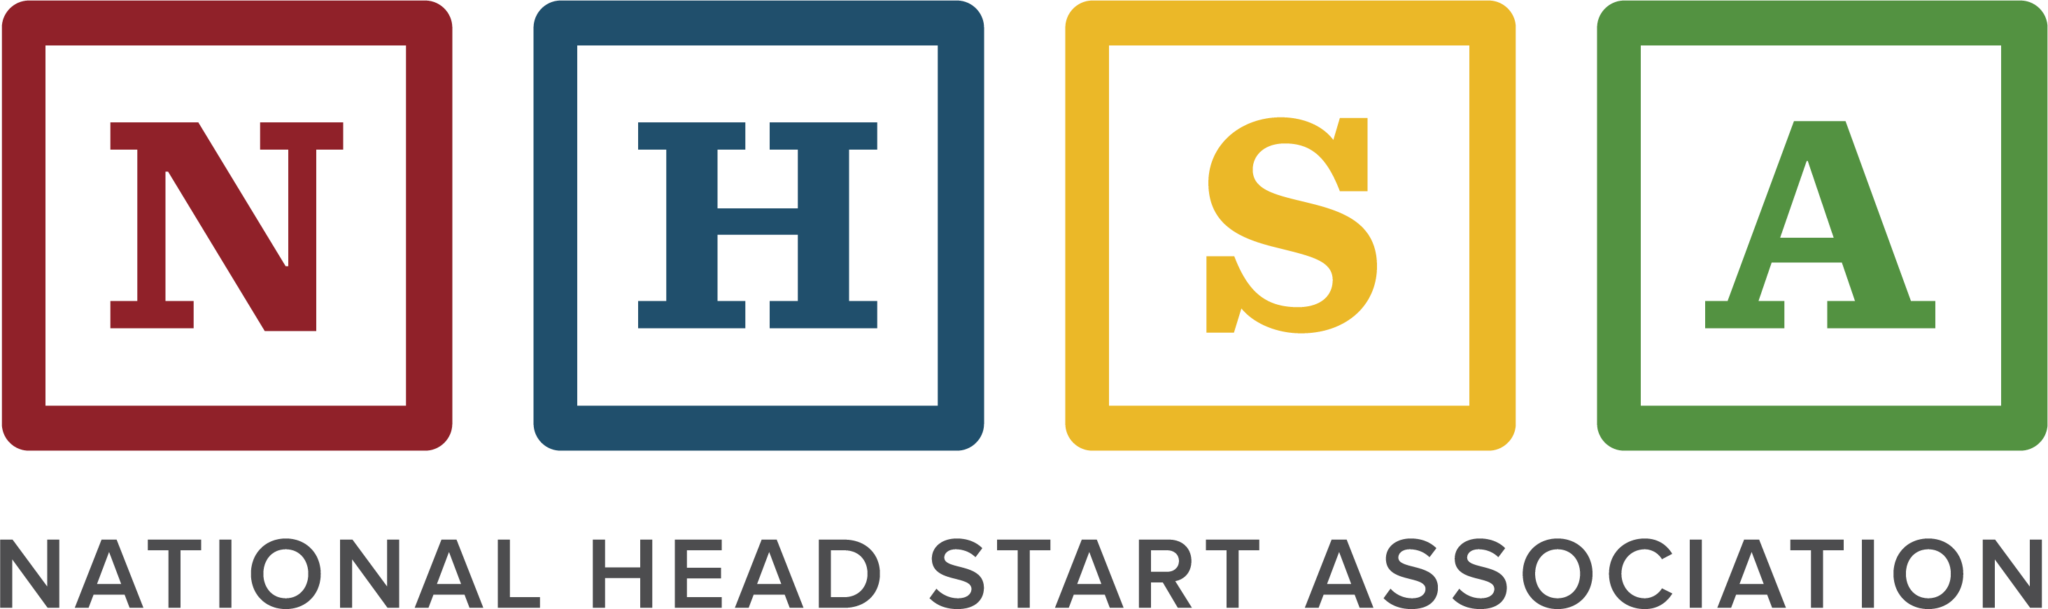 National Head Start Association